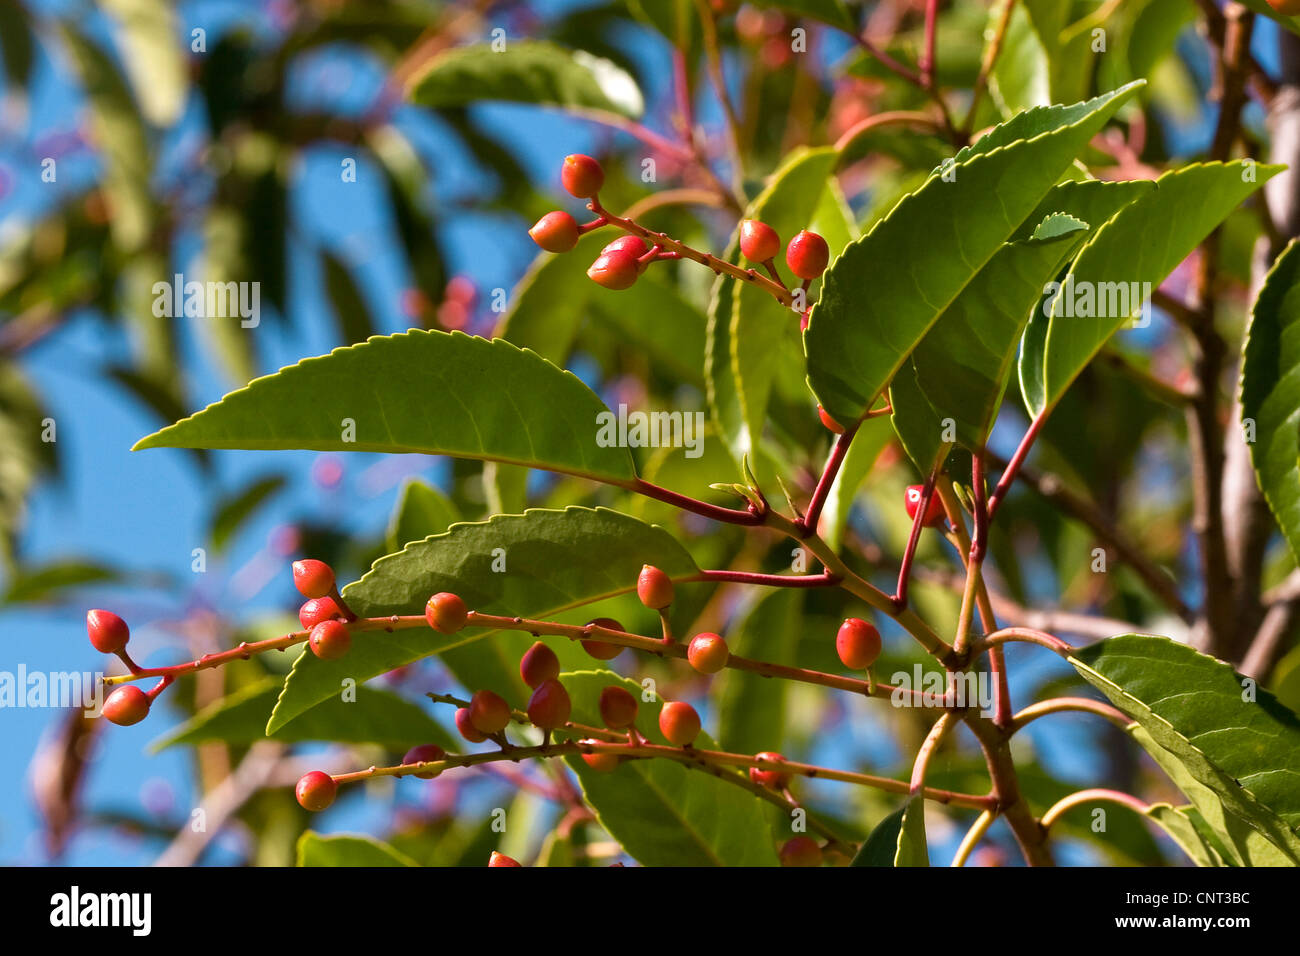 Portugal laurel (Prunus lusitanica), fruits Stock Photo